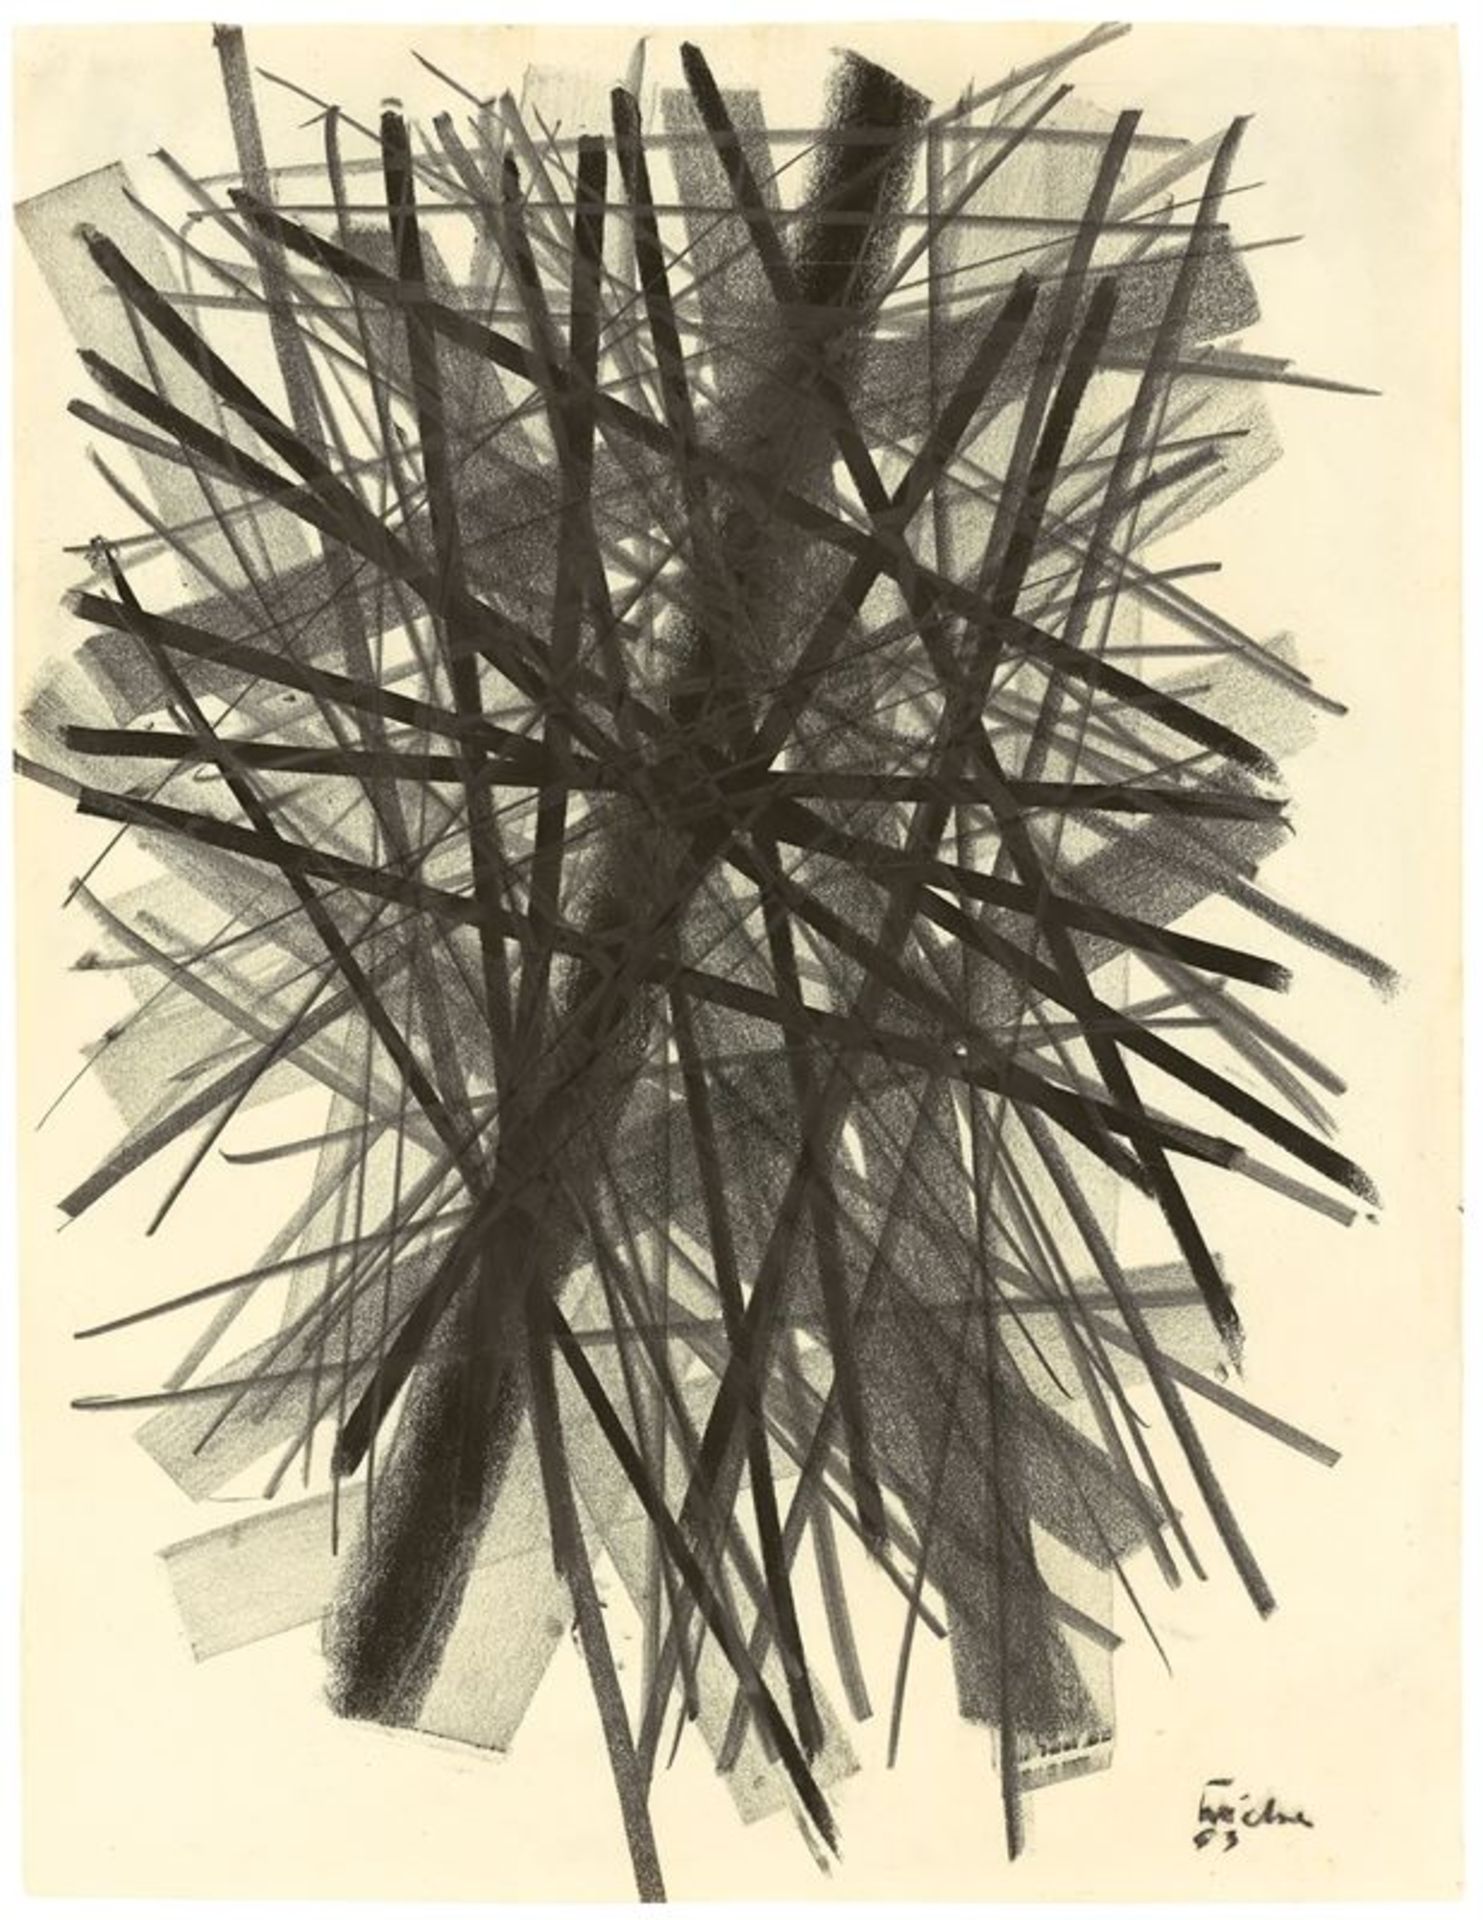 Norbert Kricke (1922 – Düsseldorf – 1984)Ohne Titel. 1953Kreide, Kohle und Grafit auf Papier. 58,6 ×